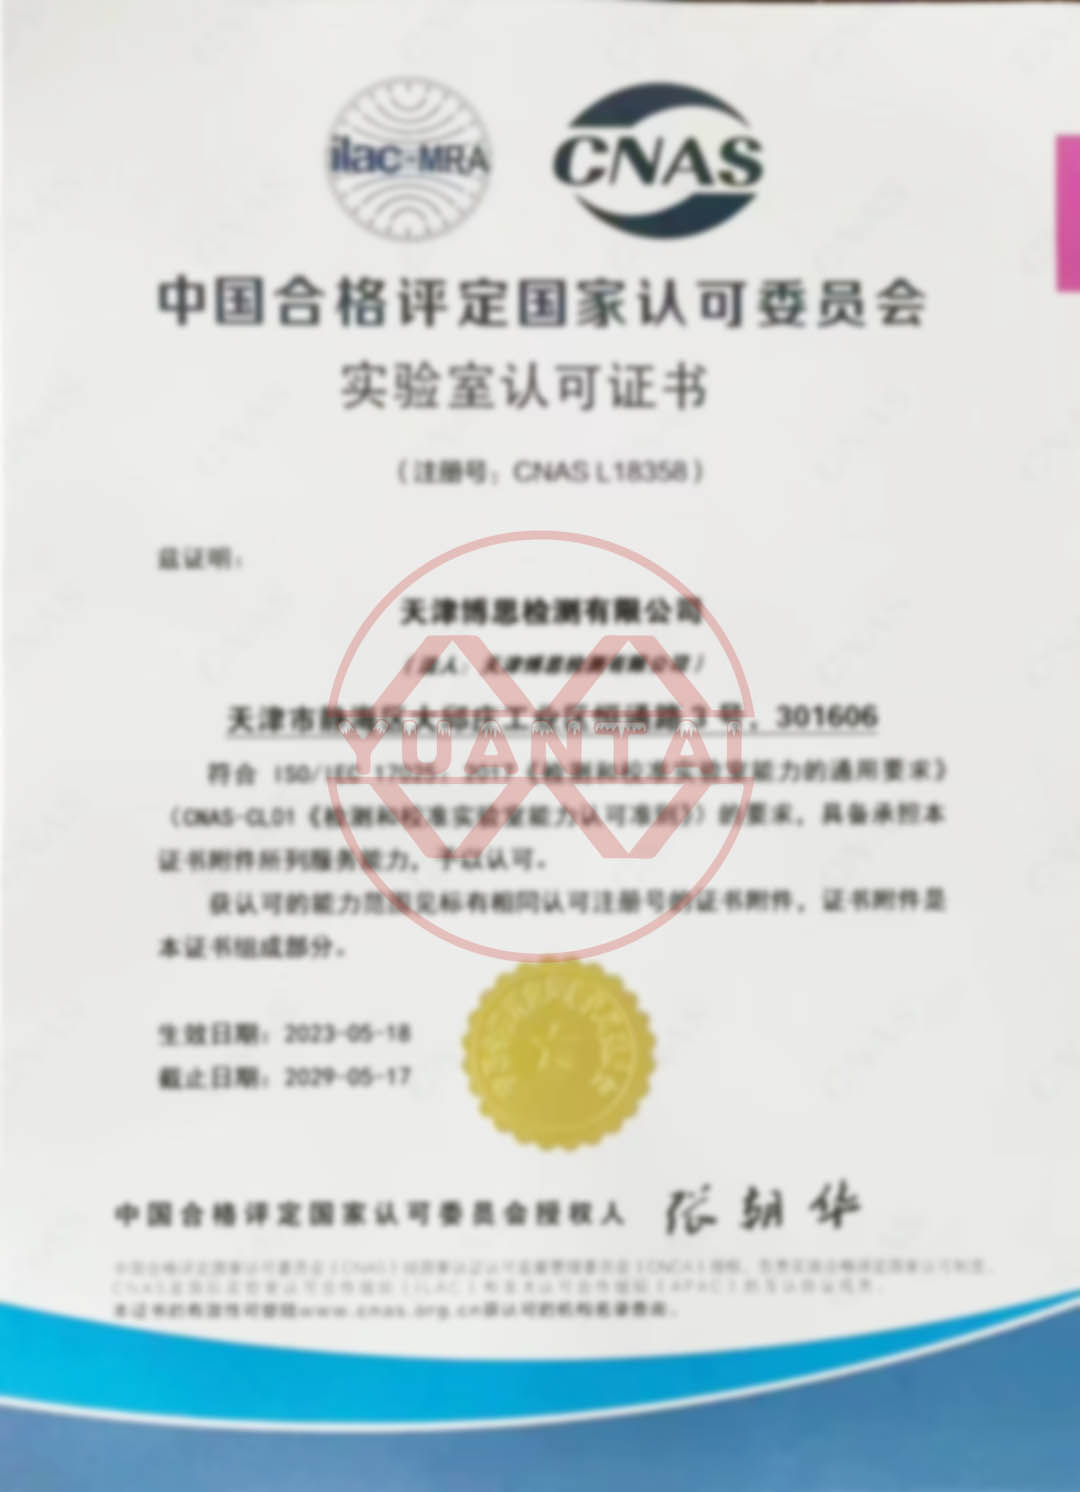 Felicitaciones a Tianjin Bosi Testing Co., Ltd., una subsidiaria de Yuantai Derun Steel Pipe Group, por aprobar la certificación CNAS.